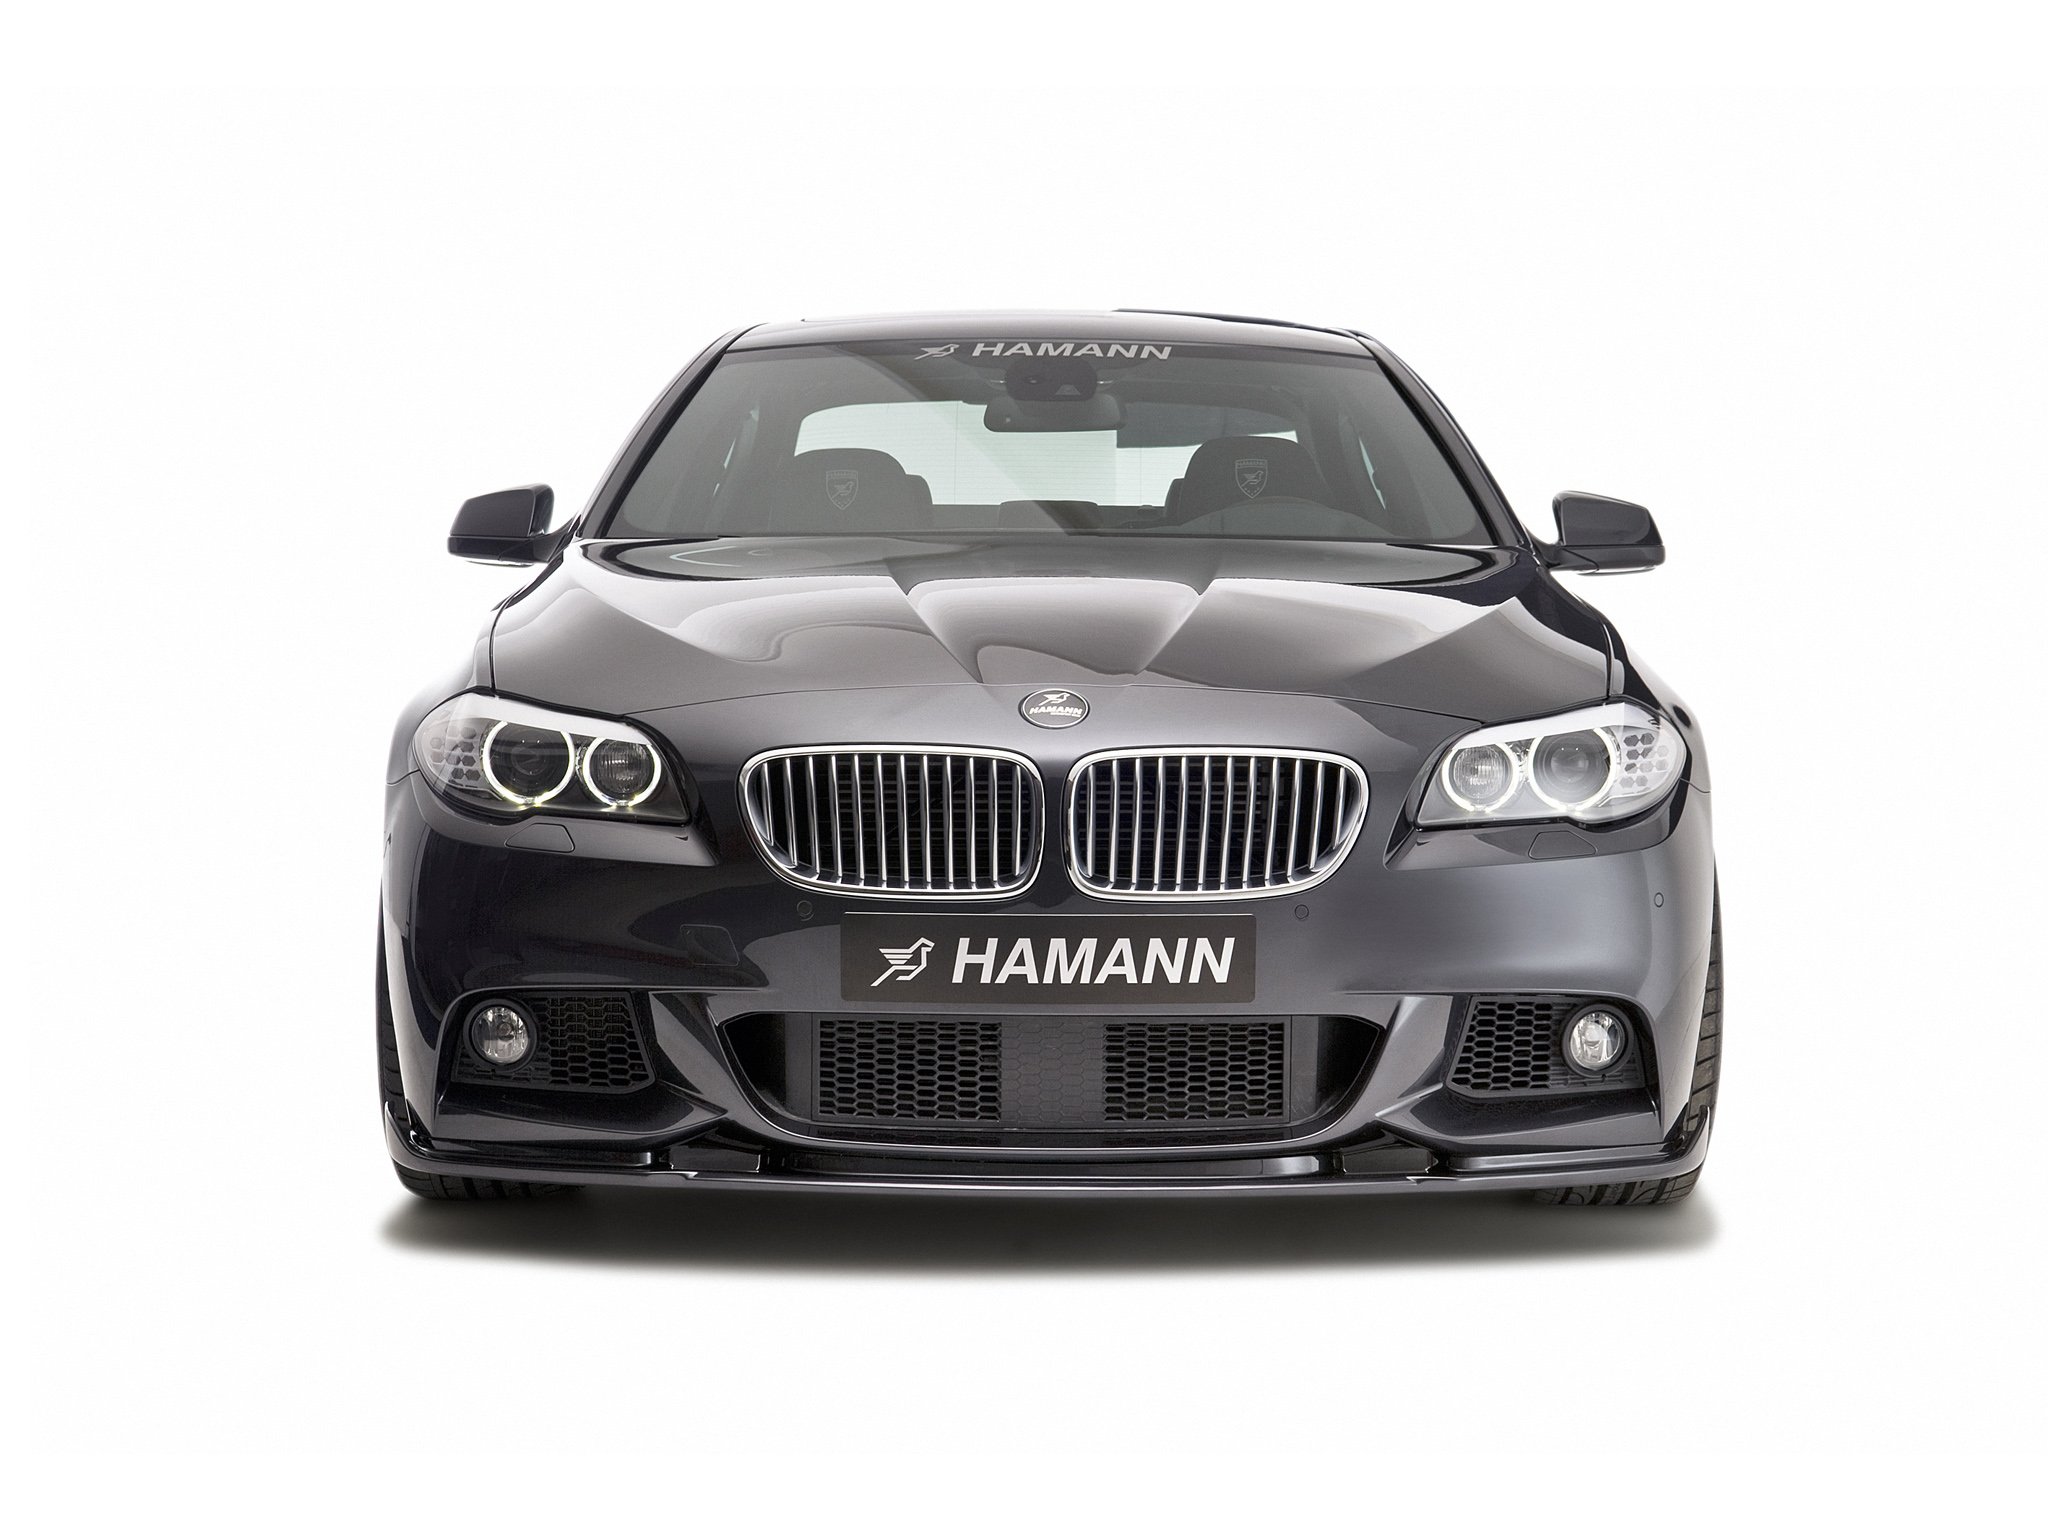 hamann, Bmw, 5 series, M technik,  f10 , Cars, Modifided Wallpaper